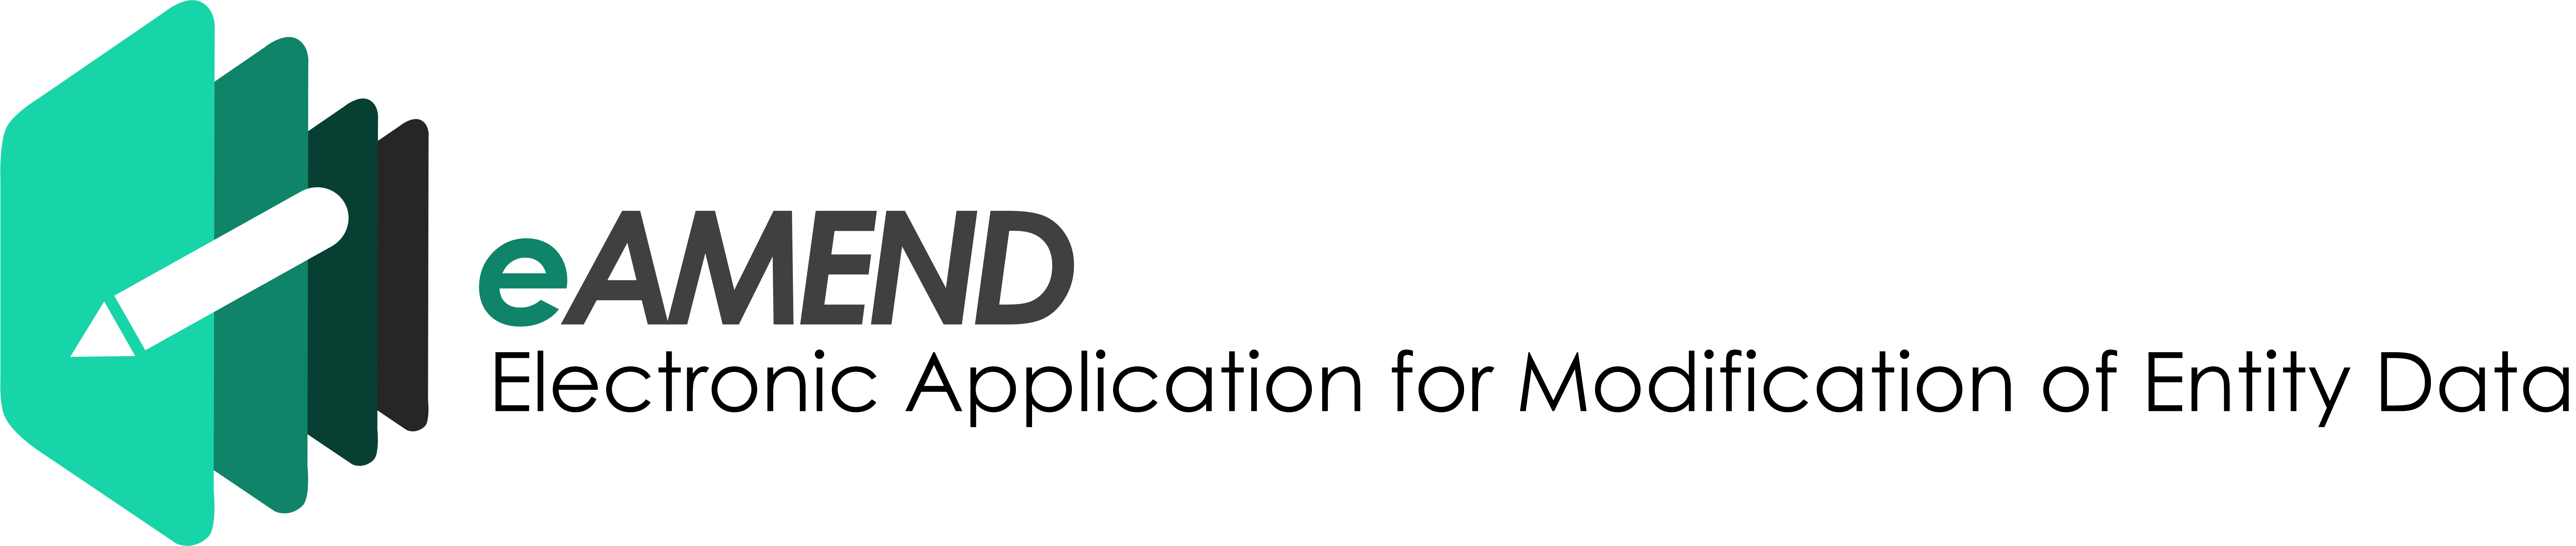 SEC-eAMEND-logo